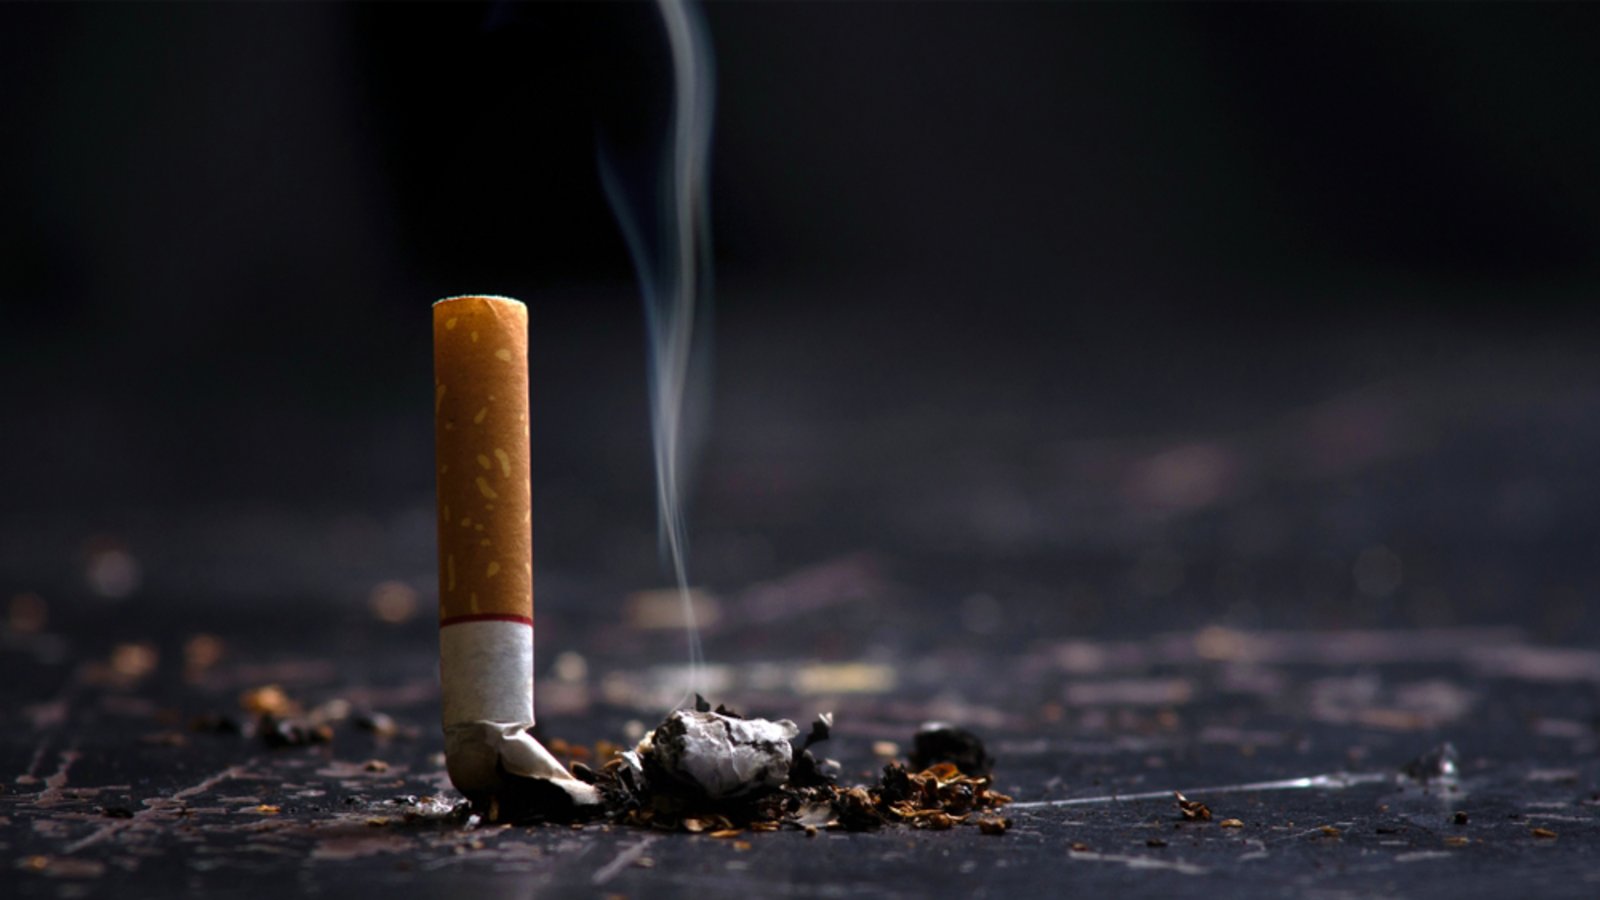 Sollte man während des Ramadans auf Zigaretten verzichten?Foto: chayanuphol / shutterstock.com